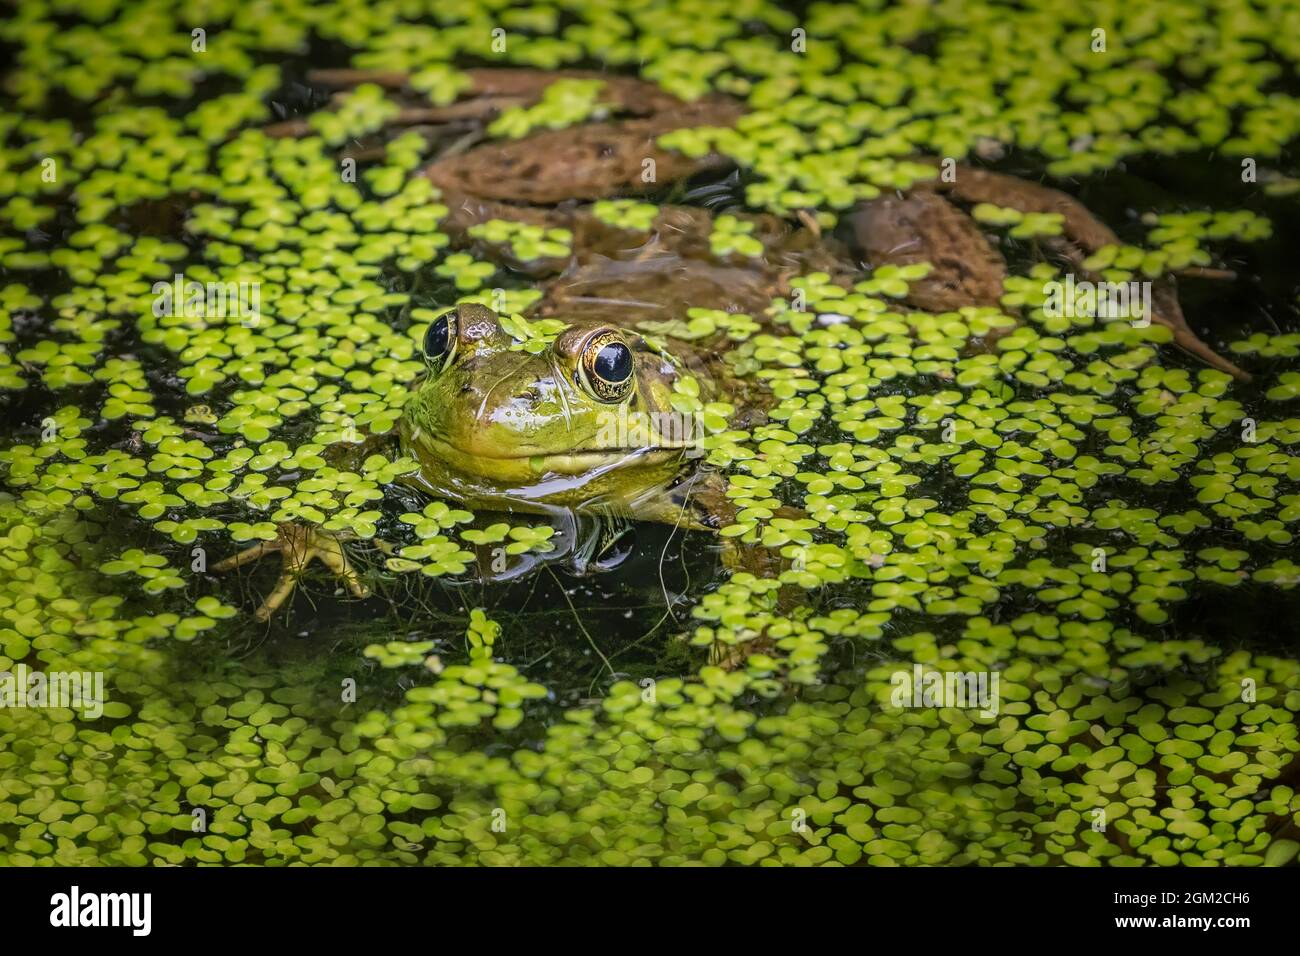 American Bull Frog Peeking aus umgeben von schwimmenden Entenkräutern in einem Teich. Dieses Bild ist sowohl in Farbe als auch in Schwarzweiß verfügbar. Weitere anzeigen Stockfoto